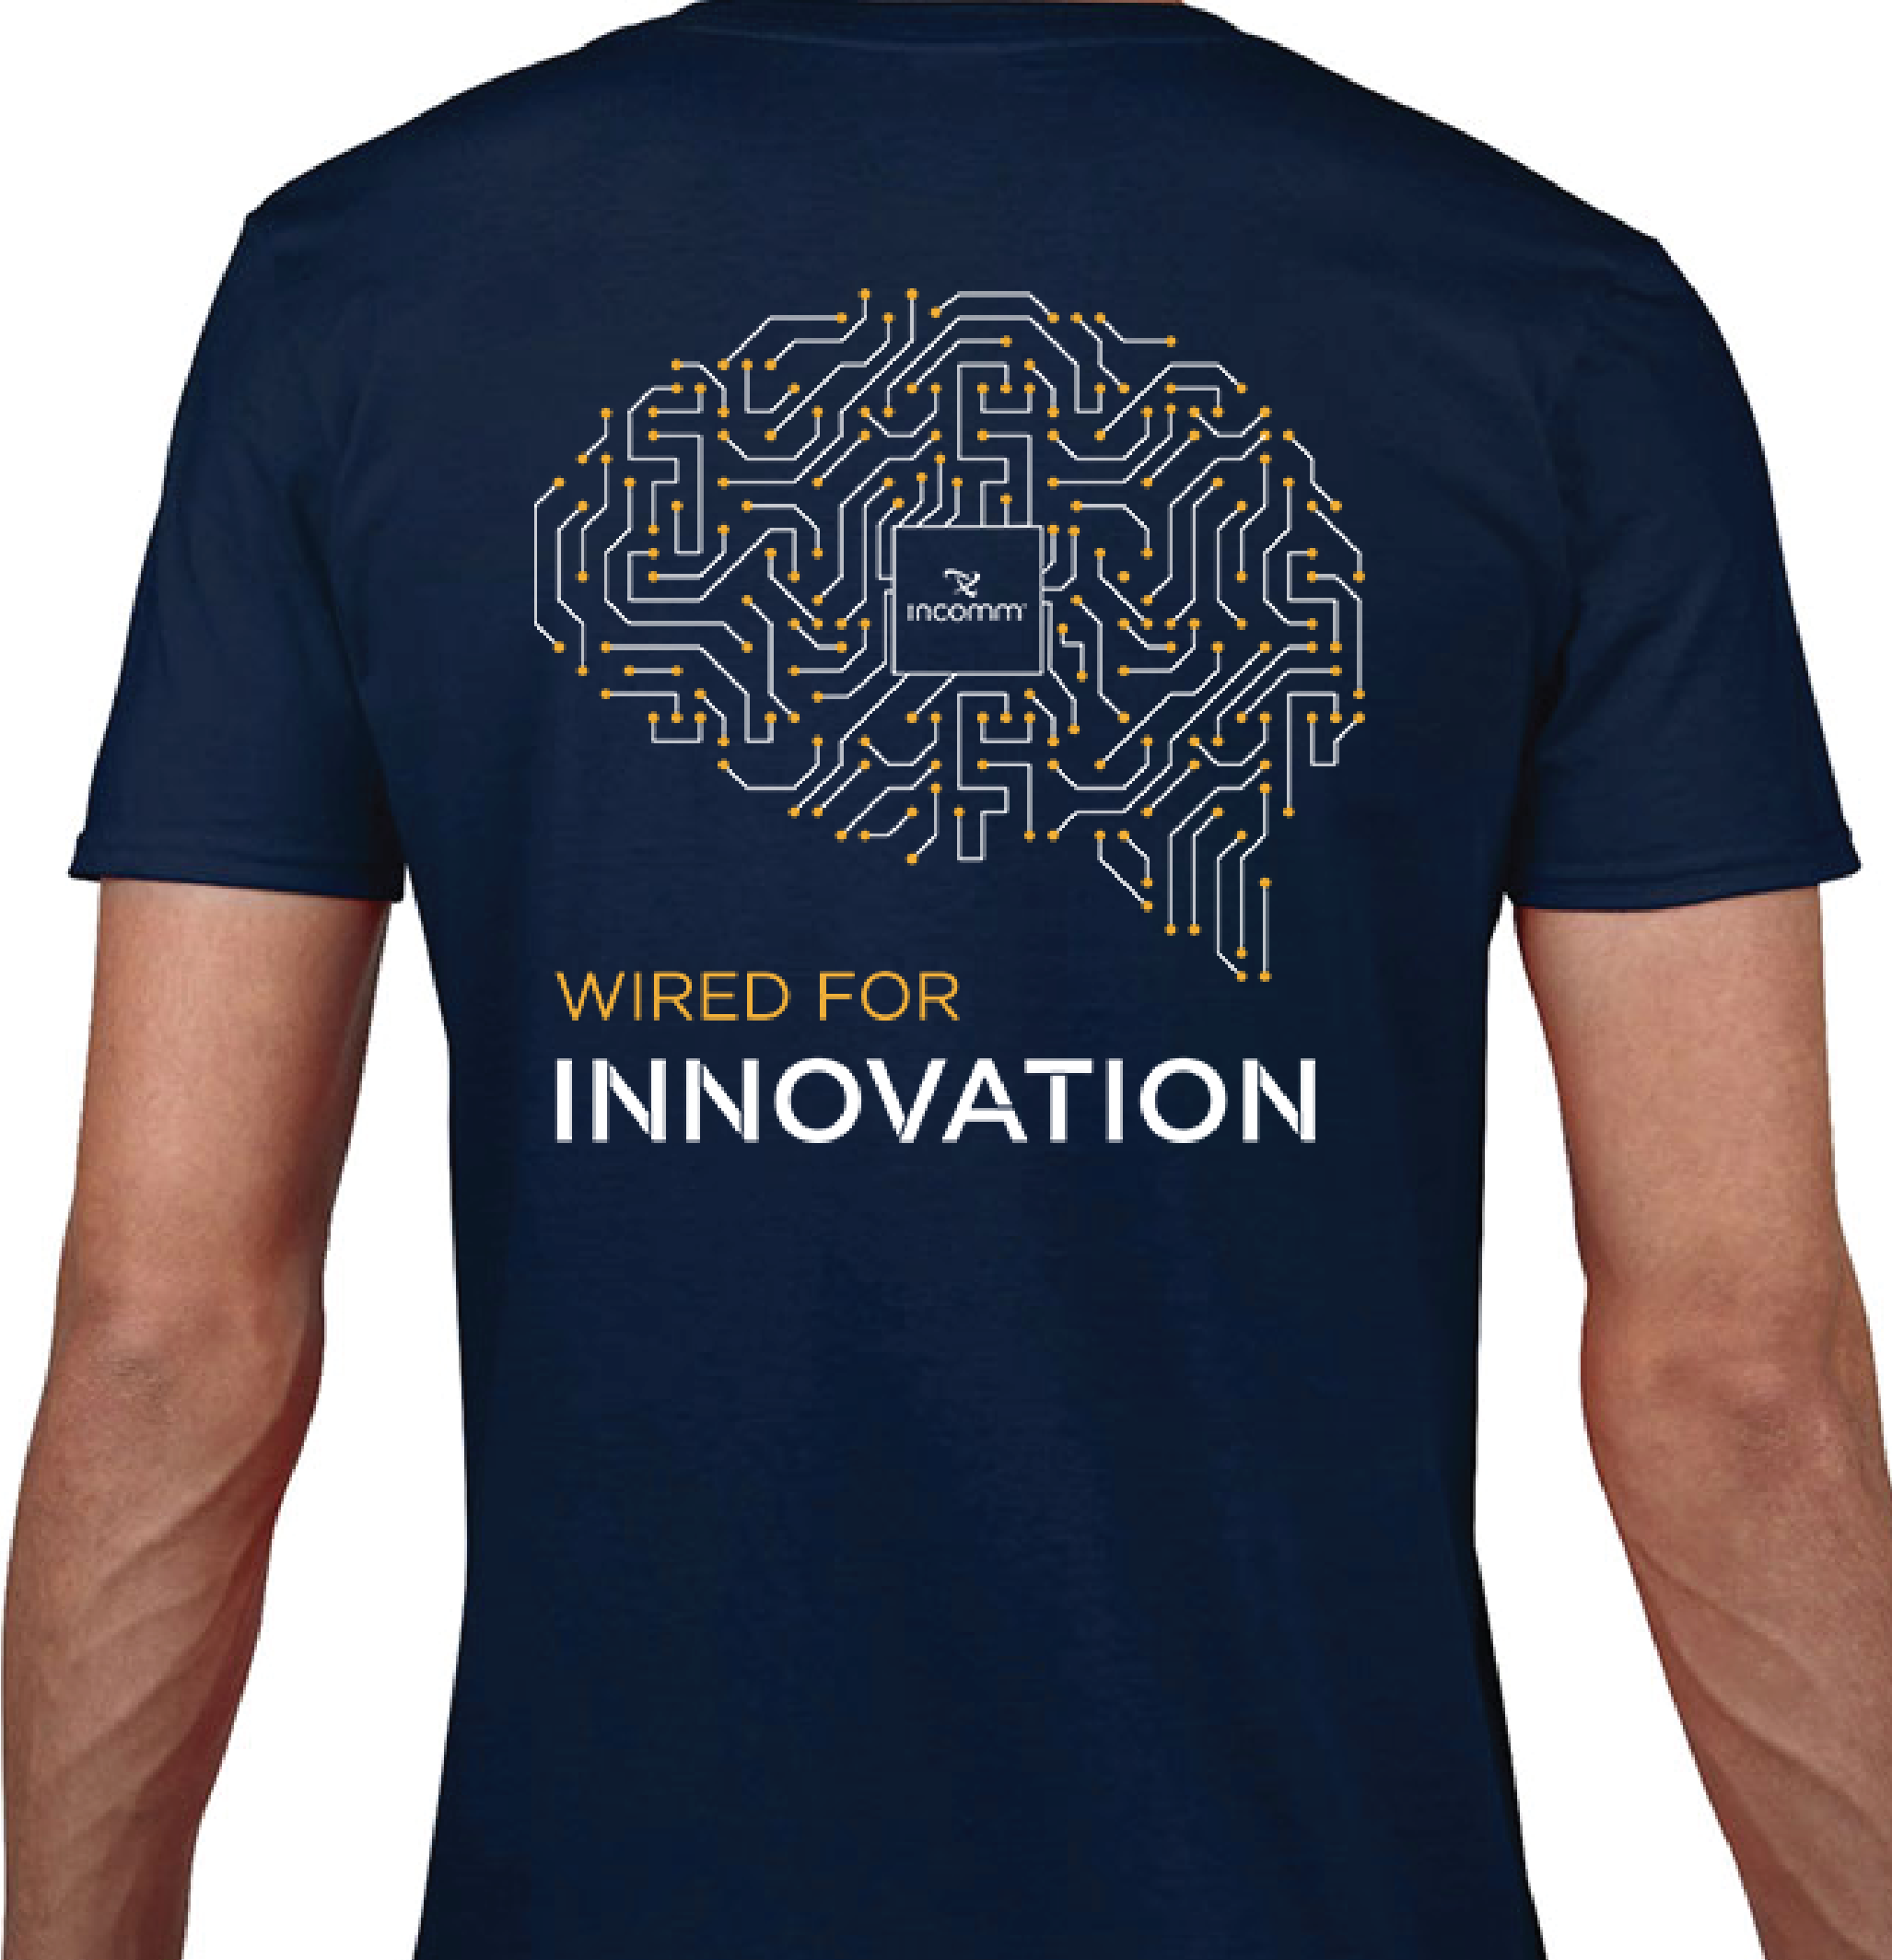 innovation_tshirt.png